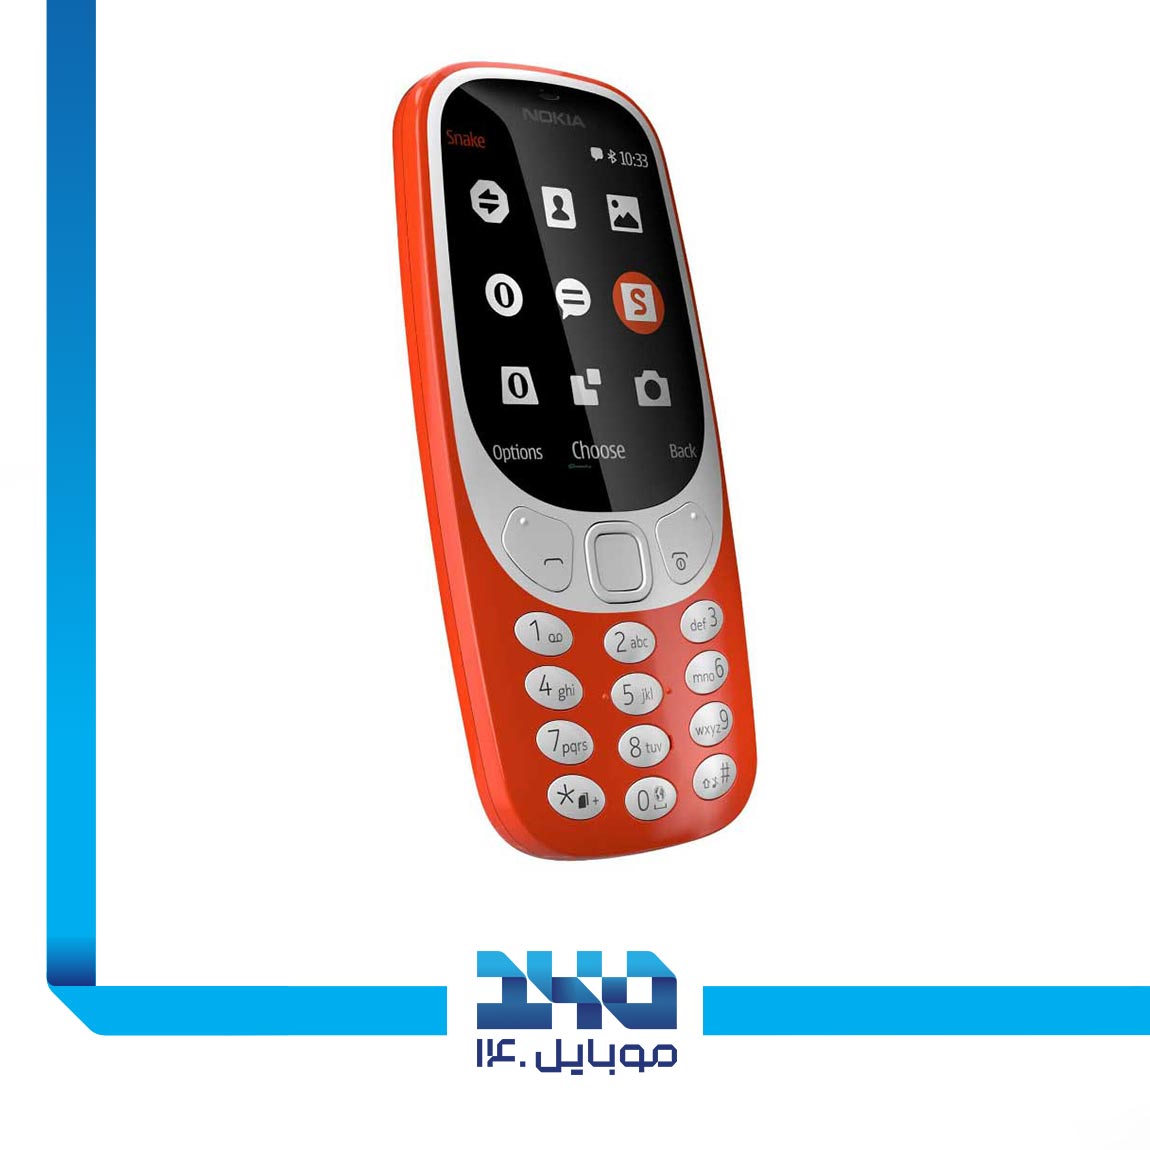 Nokia 3310 (FA) Mobile Phone 4